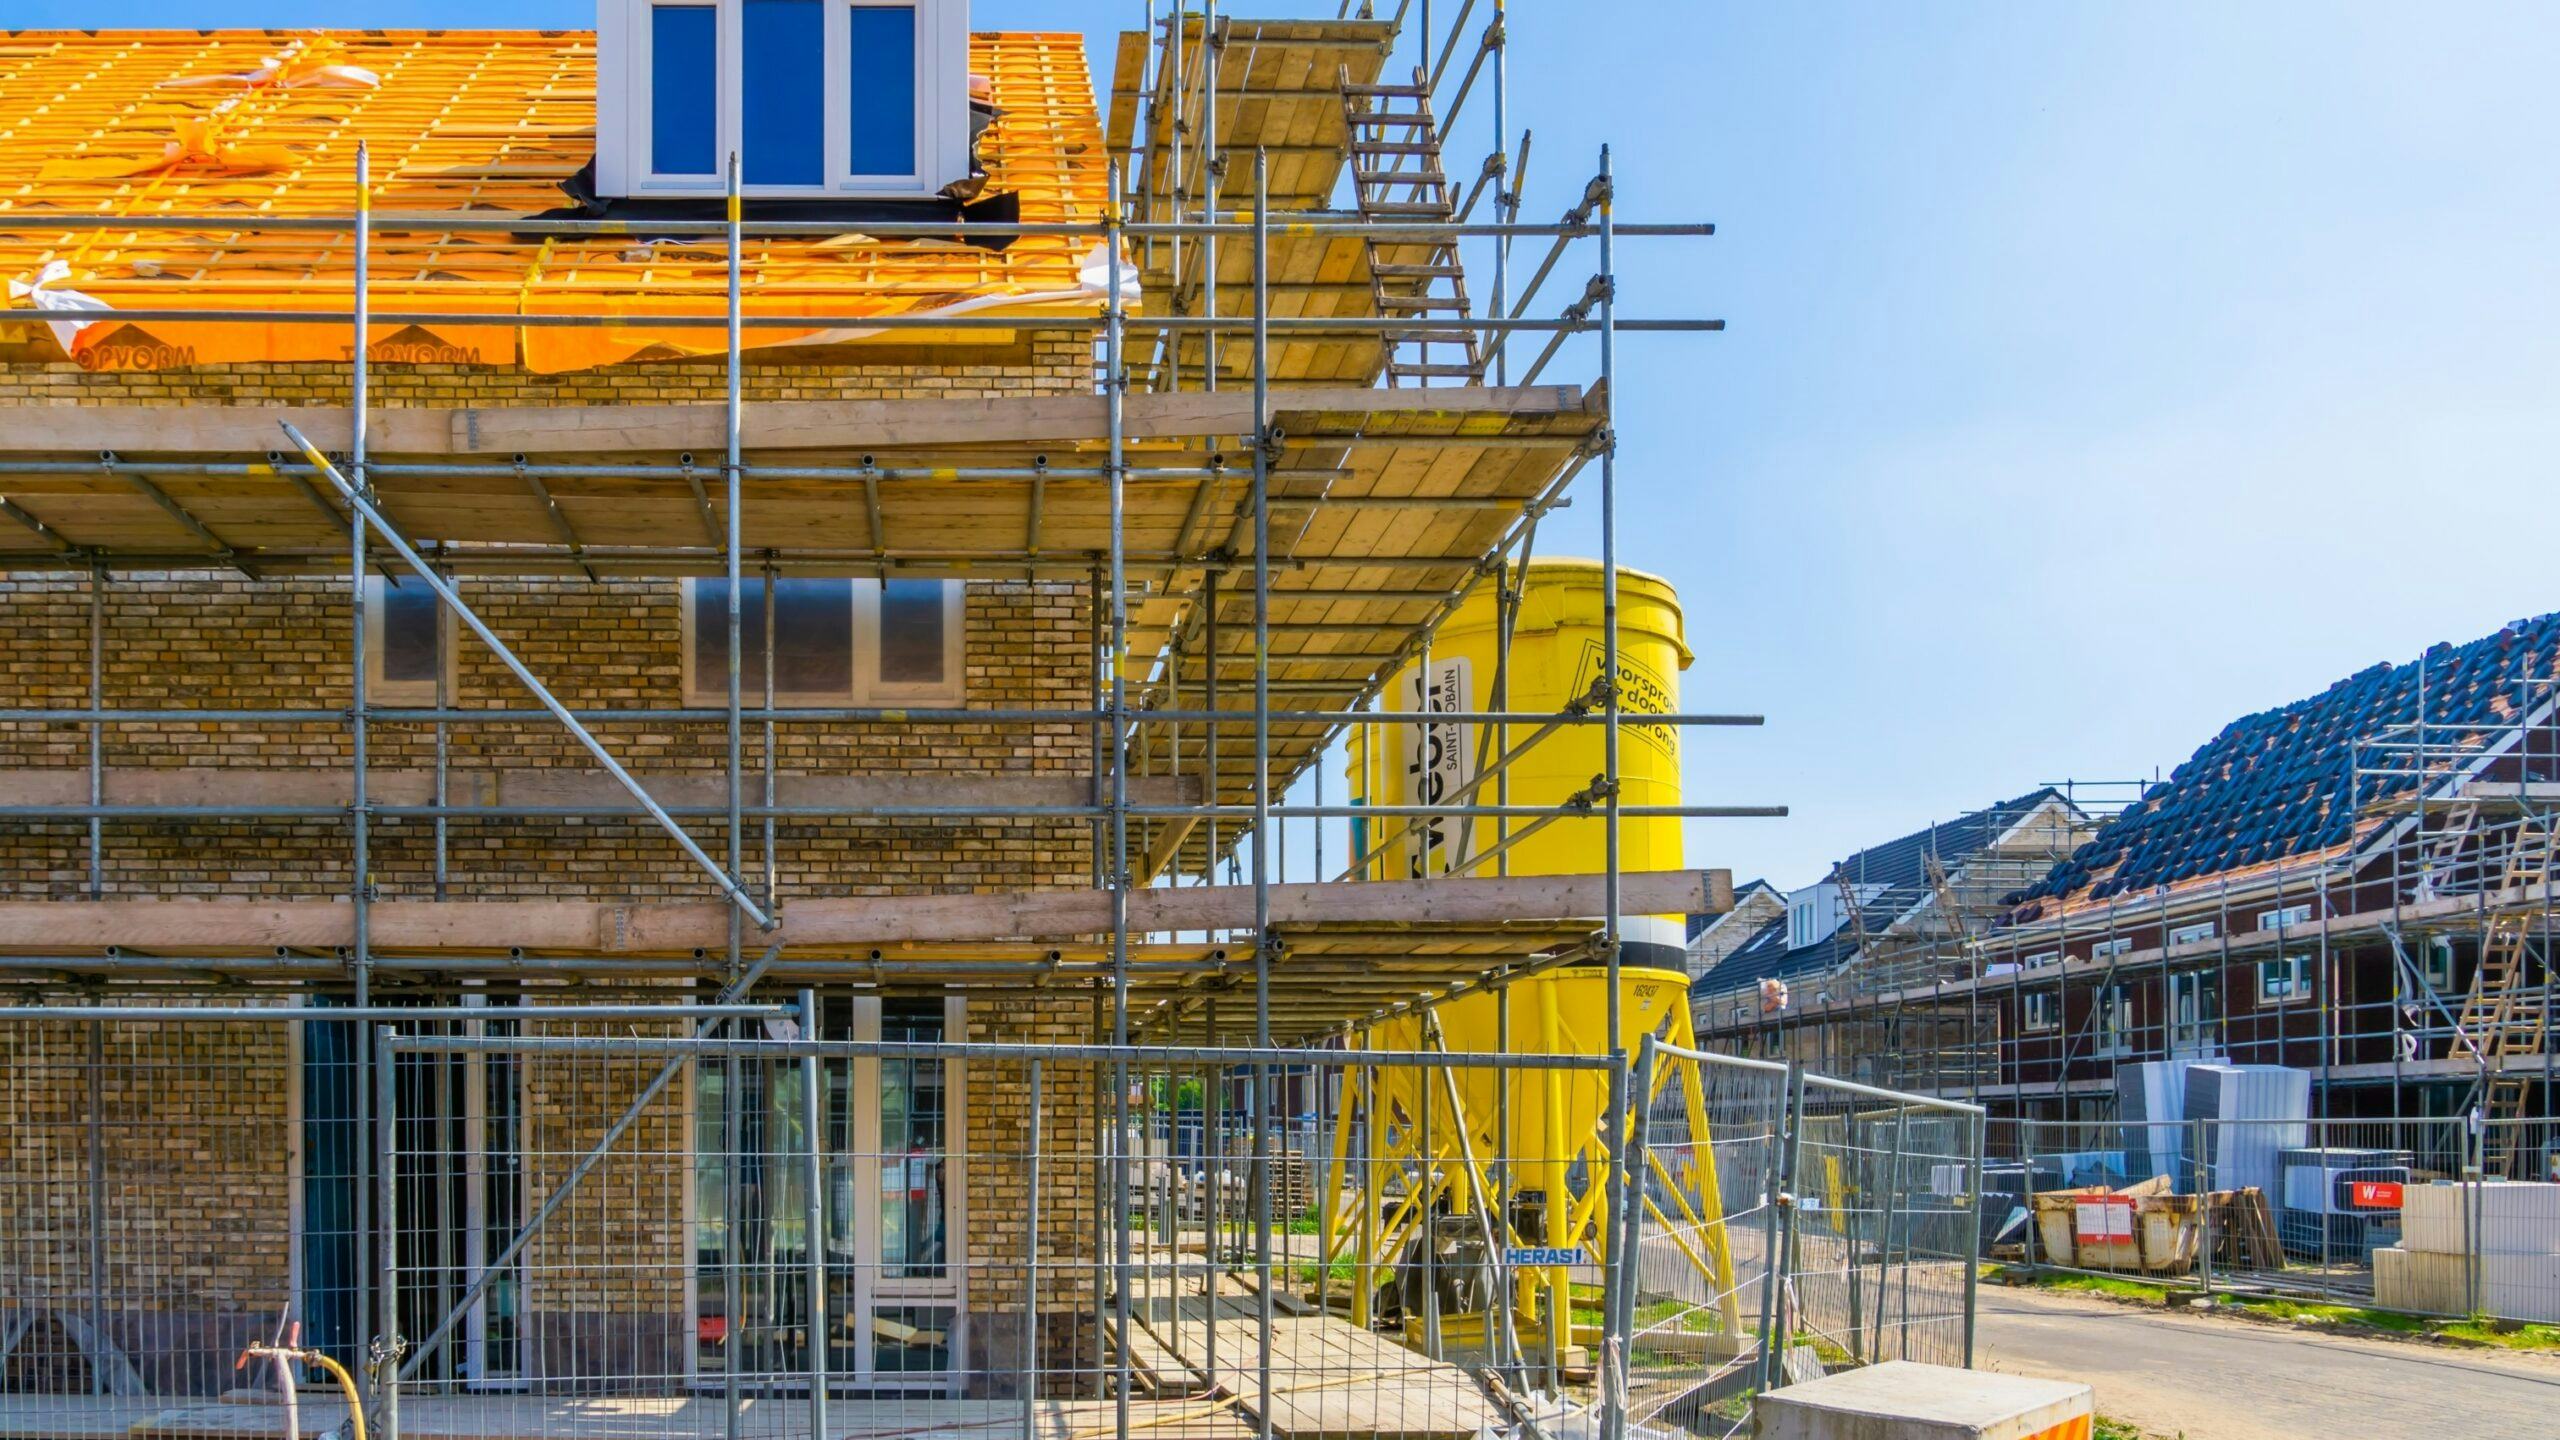 Snellere woningbouw? 'Kom met bouwgarantie, realistische plannen en 7,2 miljard'